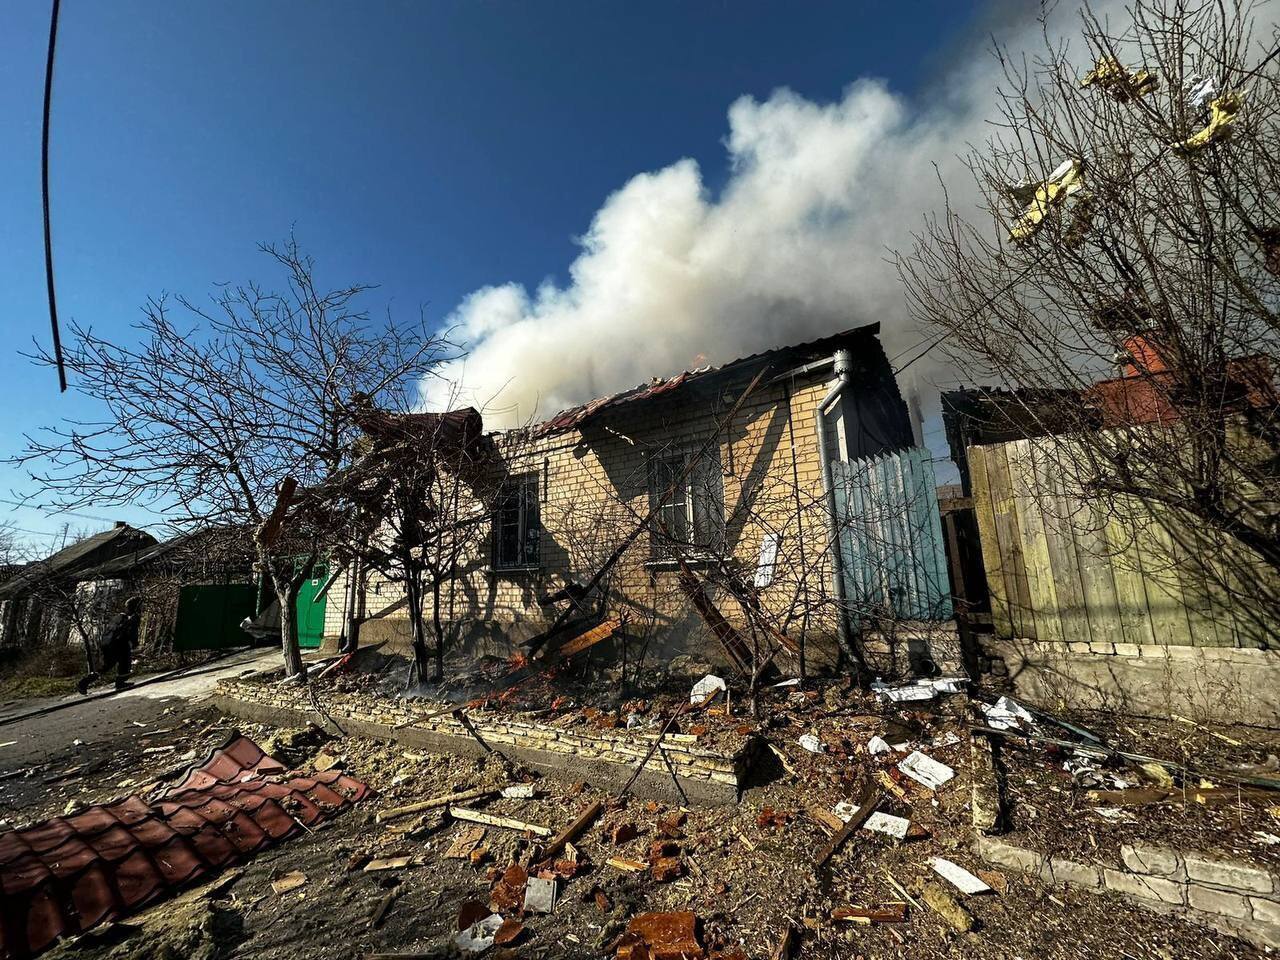 "Удар відплати": у Шойгу цинічно висловилися про ракетну атаку на Україну, внаслідок якої загинули мирні жителі